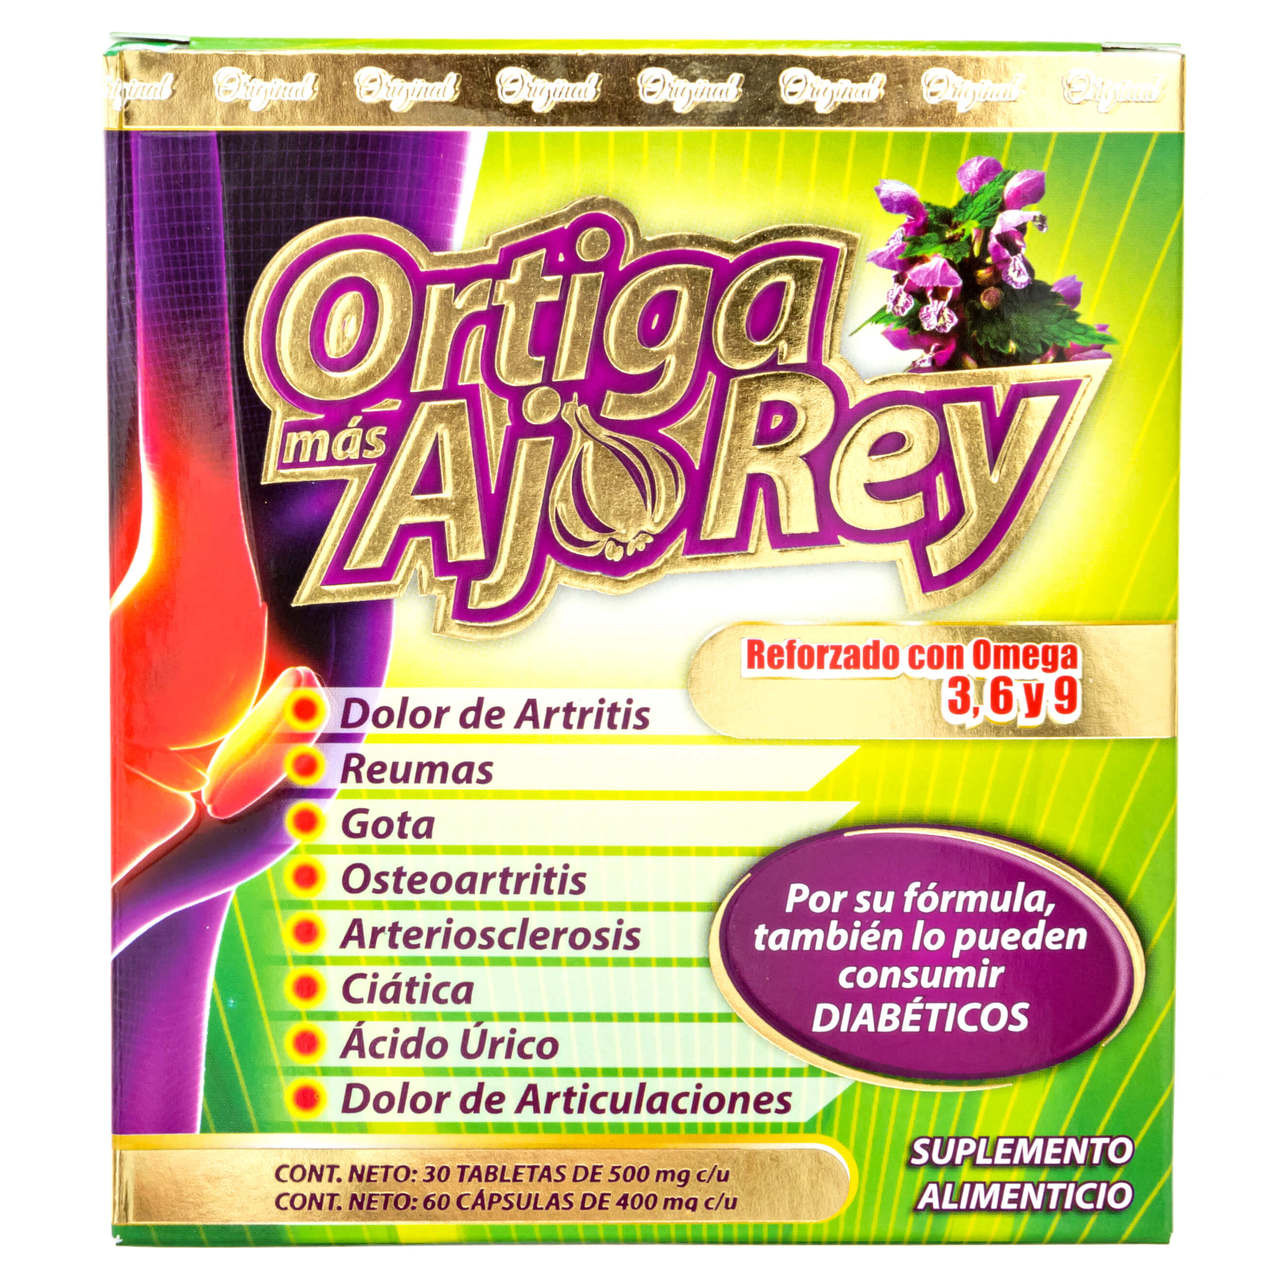 ortiga mas ajo rey reviews